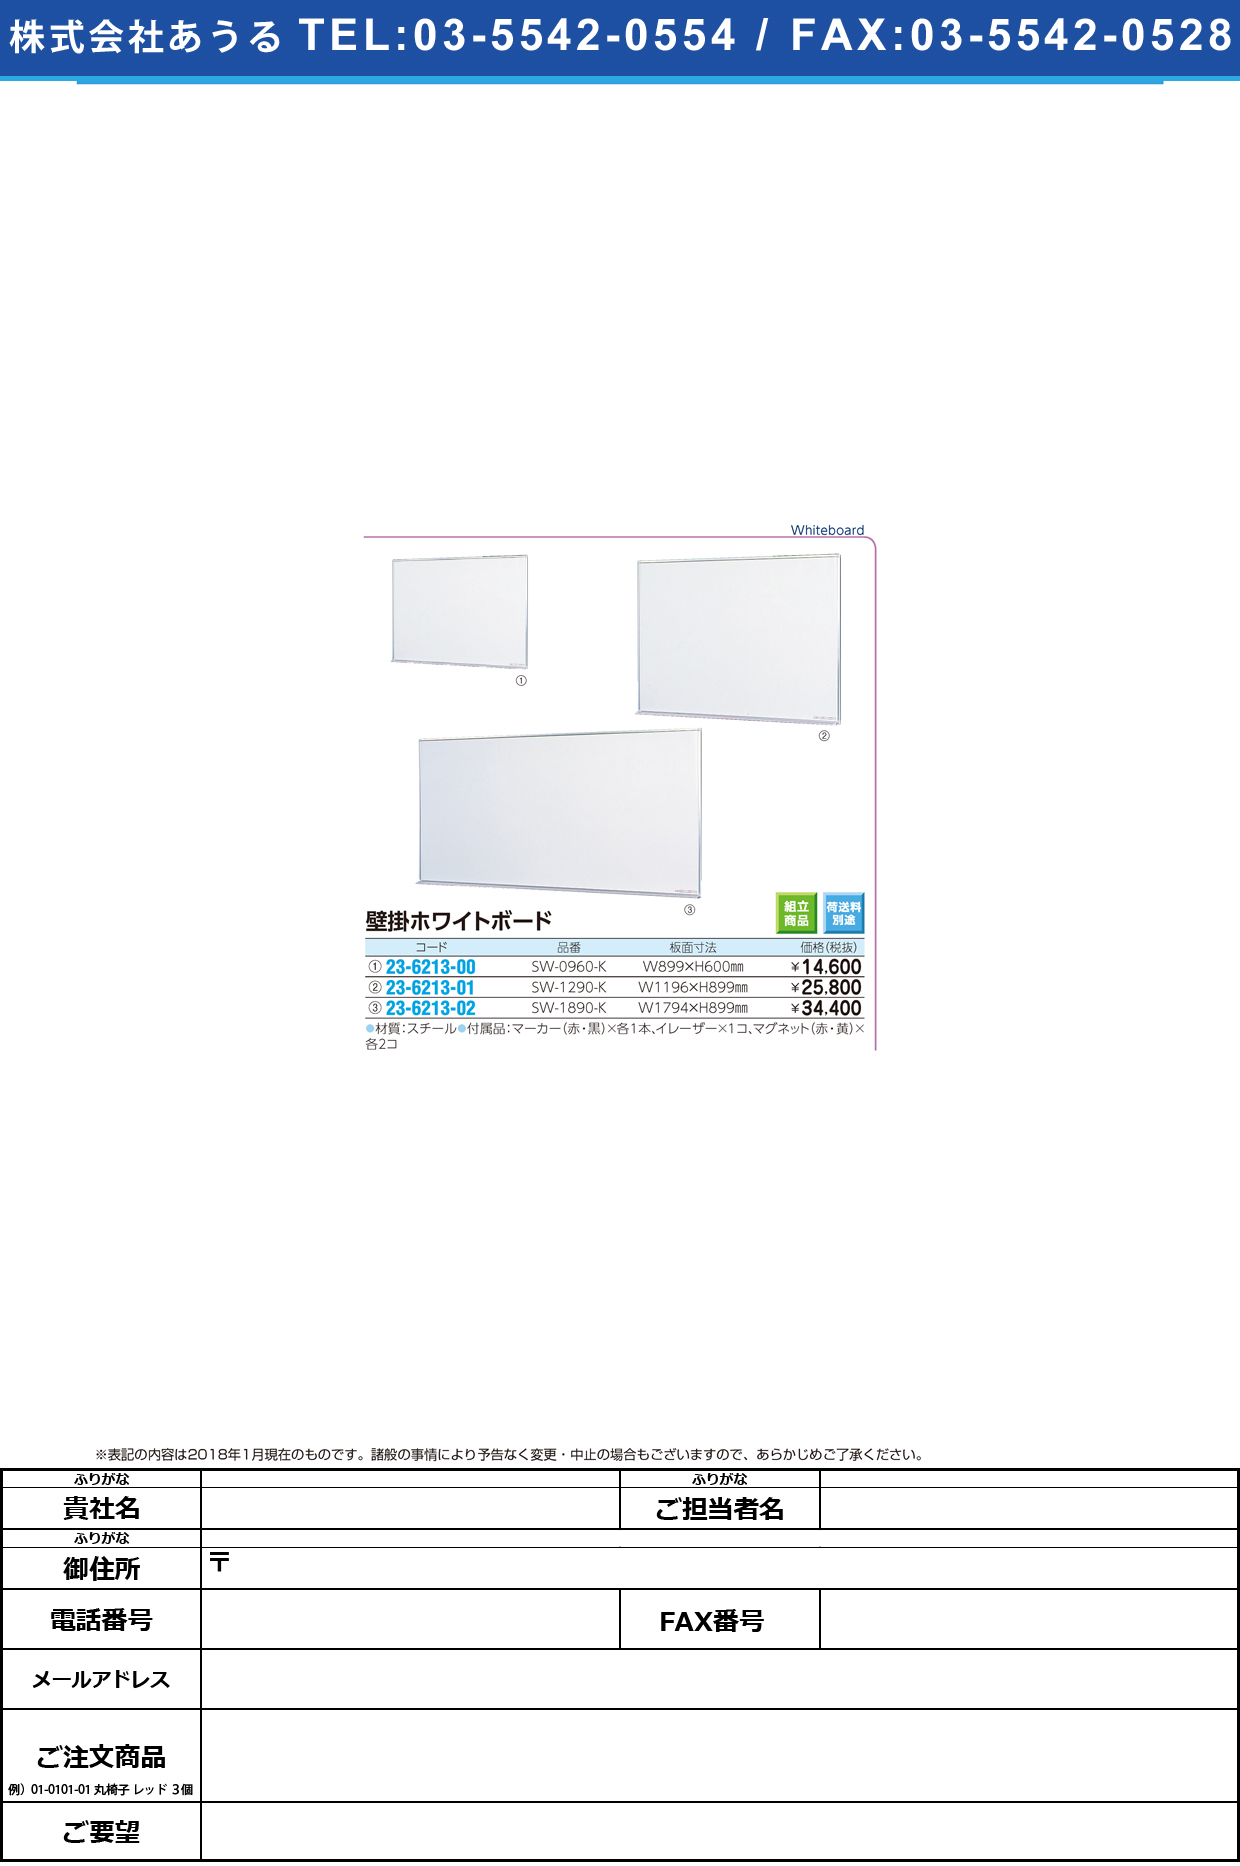 (23-6213-02)壁掛ホワイトボード SW-1890-K(1794X899) ｶﾍﾞｶｹﾎﾜｲﾄﾎﾞｰﾄﾞ【1台単位】【2018年カタログ商品】